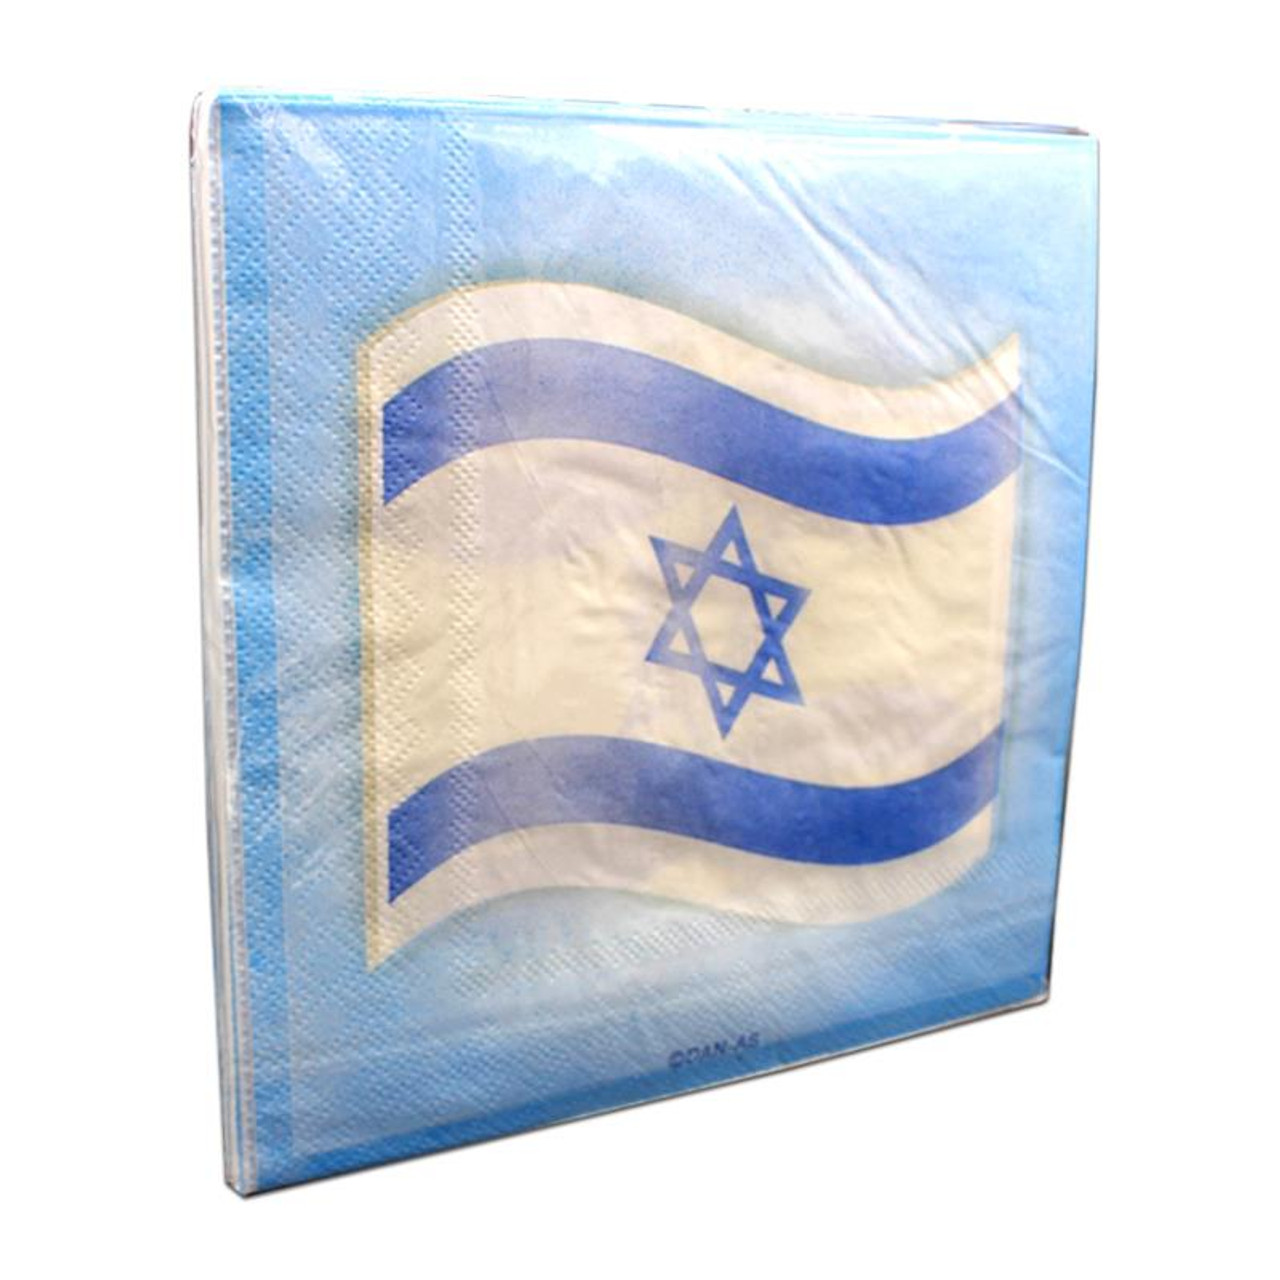 20 מפיות דגל ישראל 16.5 סמ